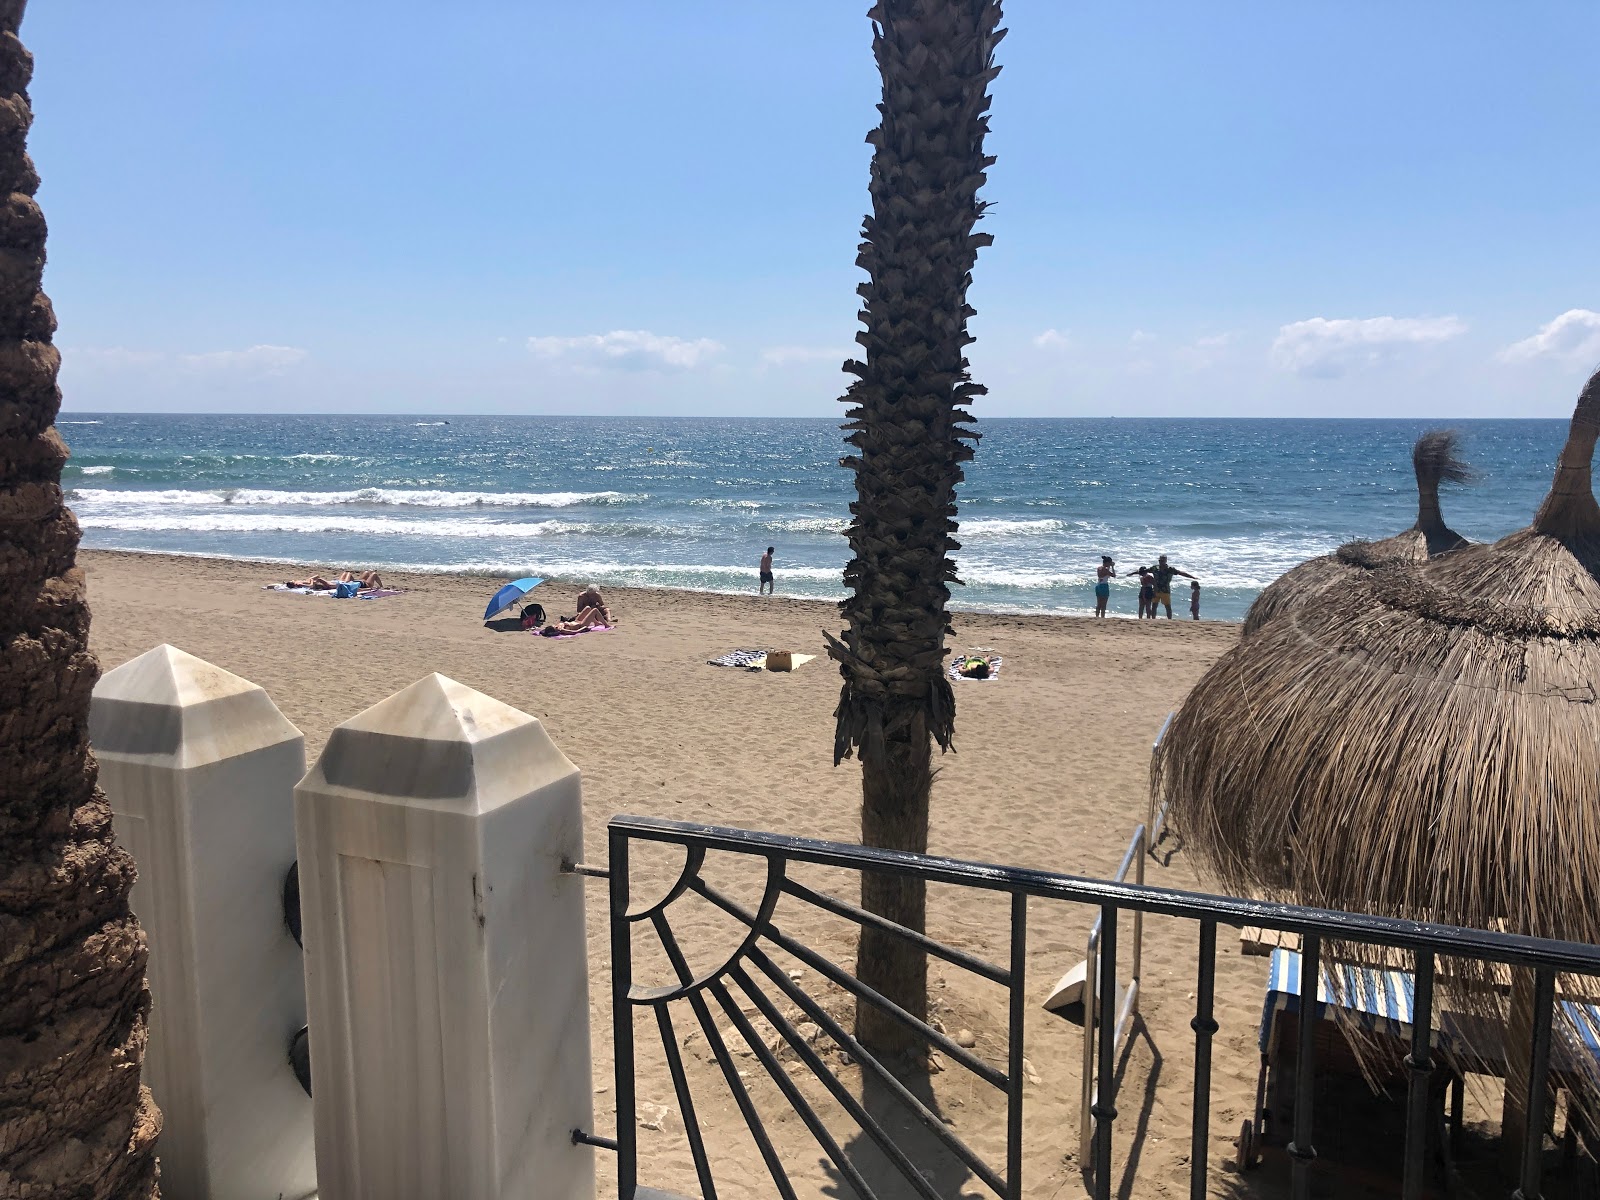 Playa Casablanca'in fotoğrafı geniş ile birlikte